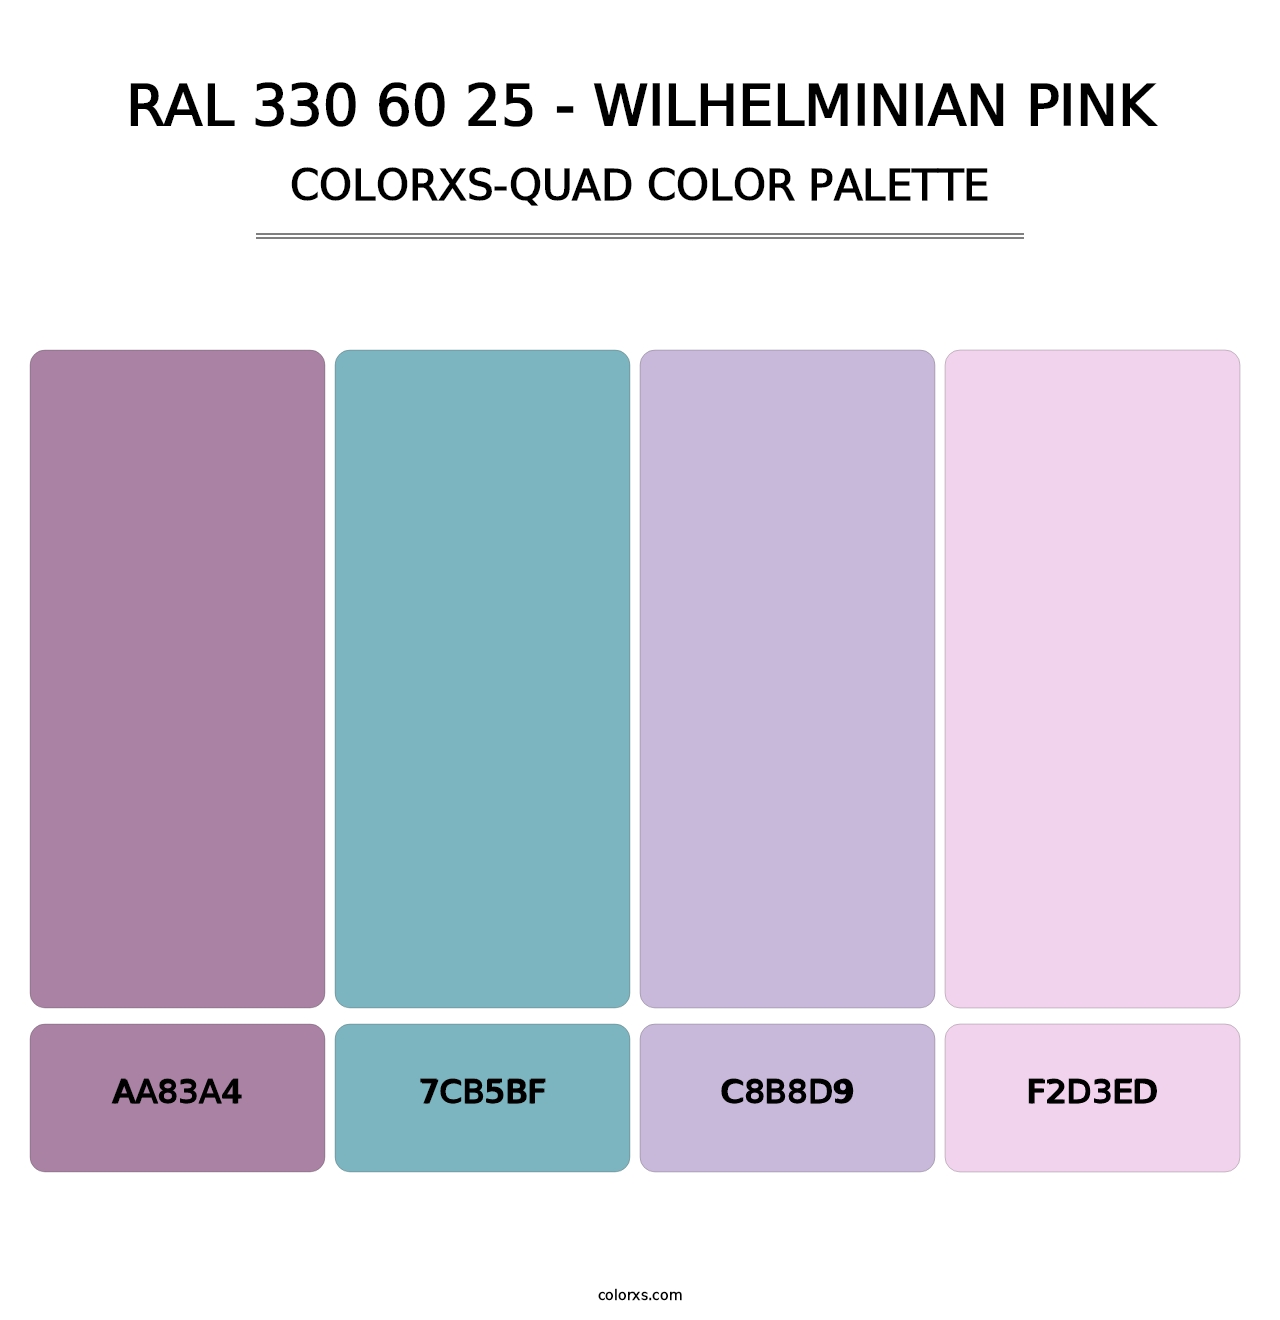 RAL 330 60 25 - Wilhelminian Pink - Colorxs Quad Palette